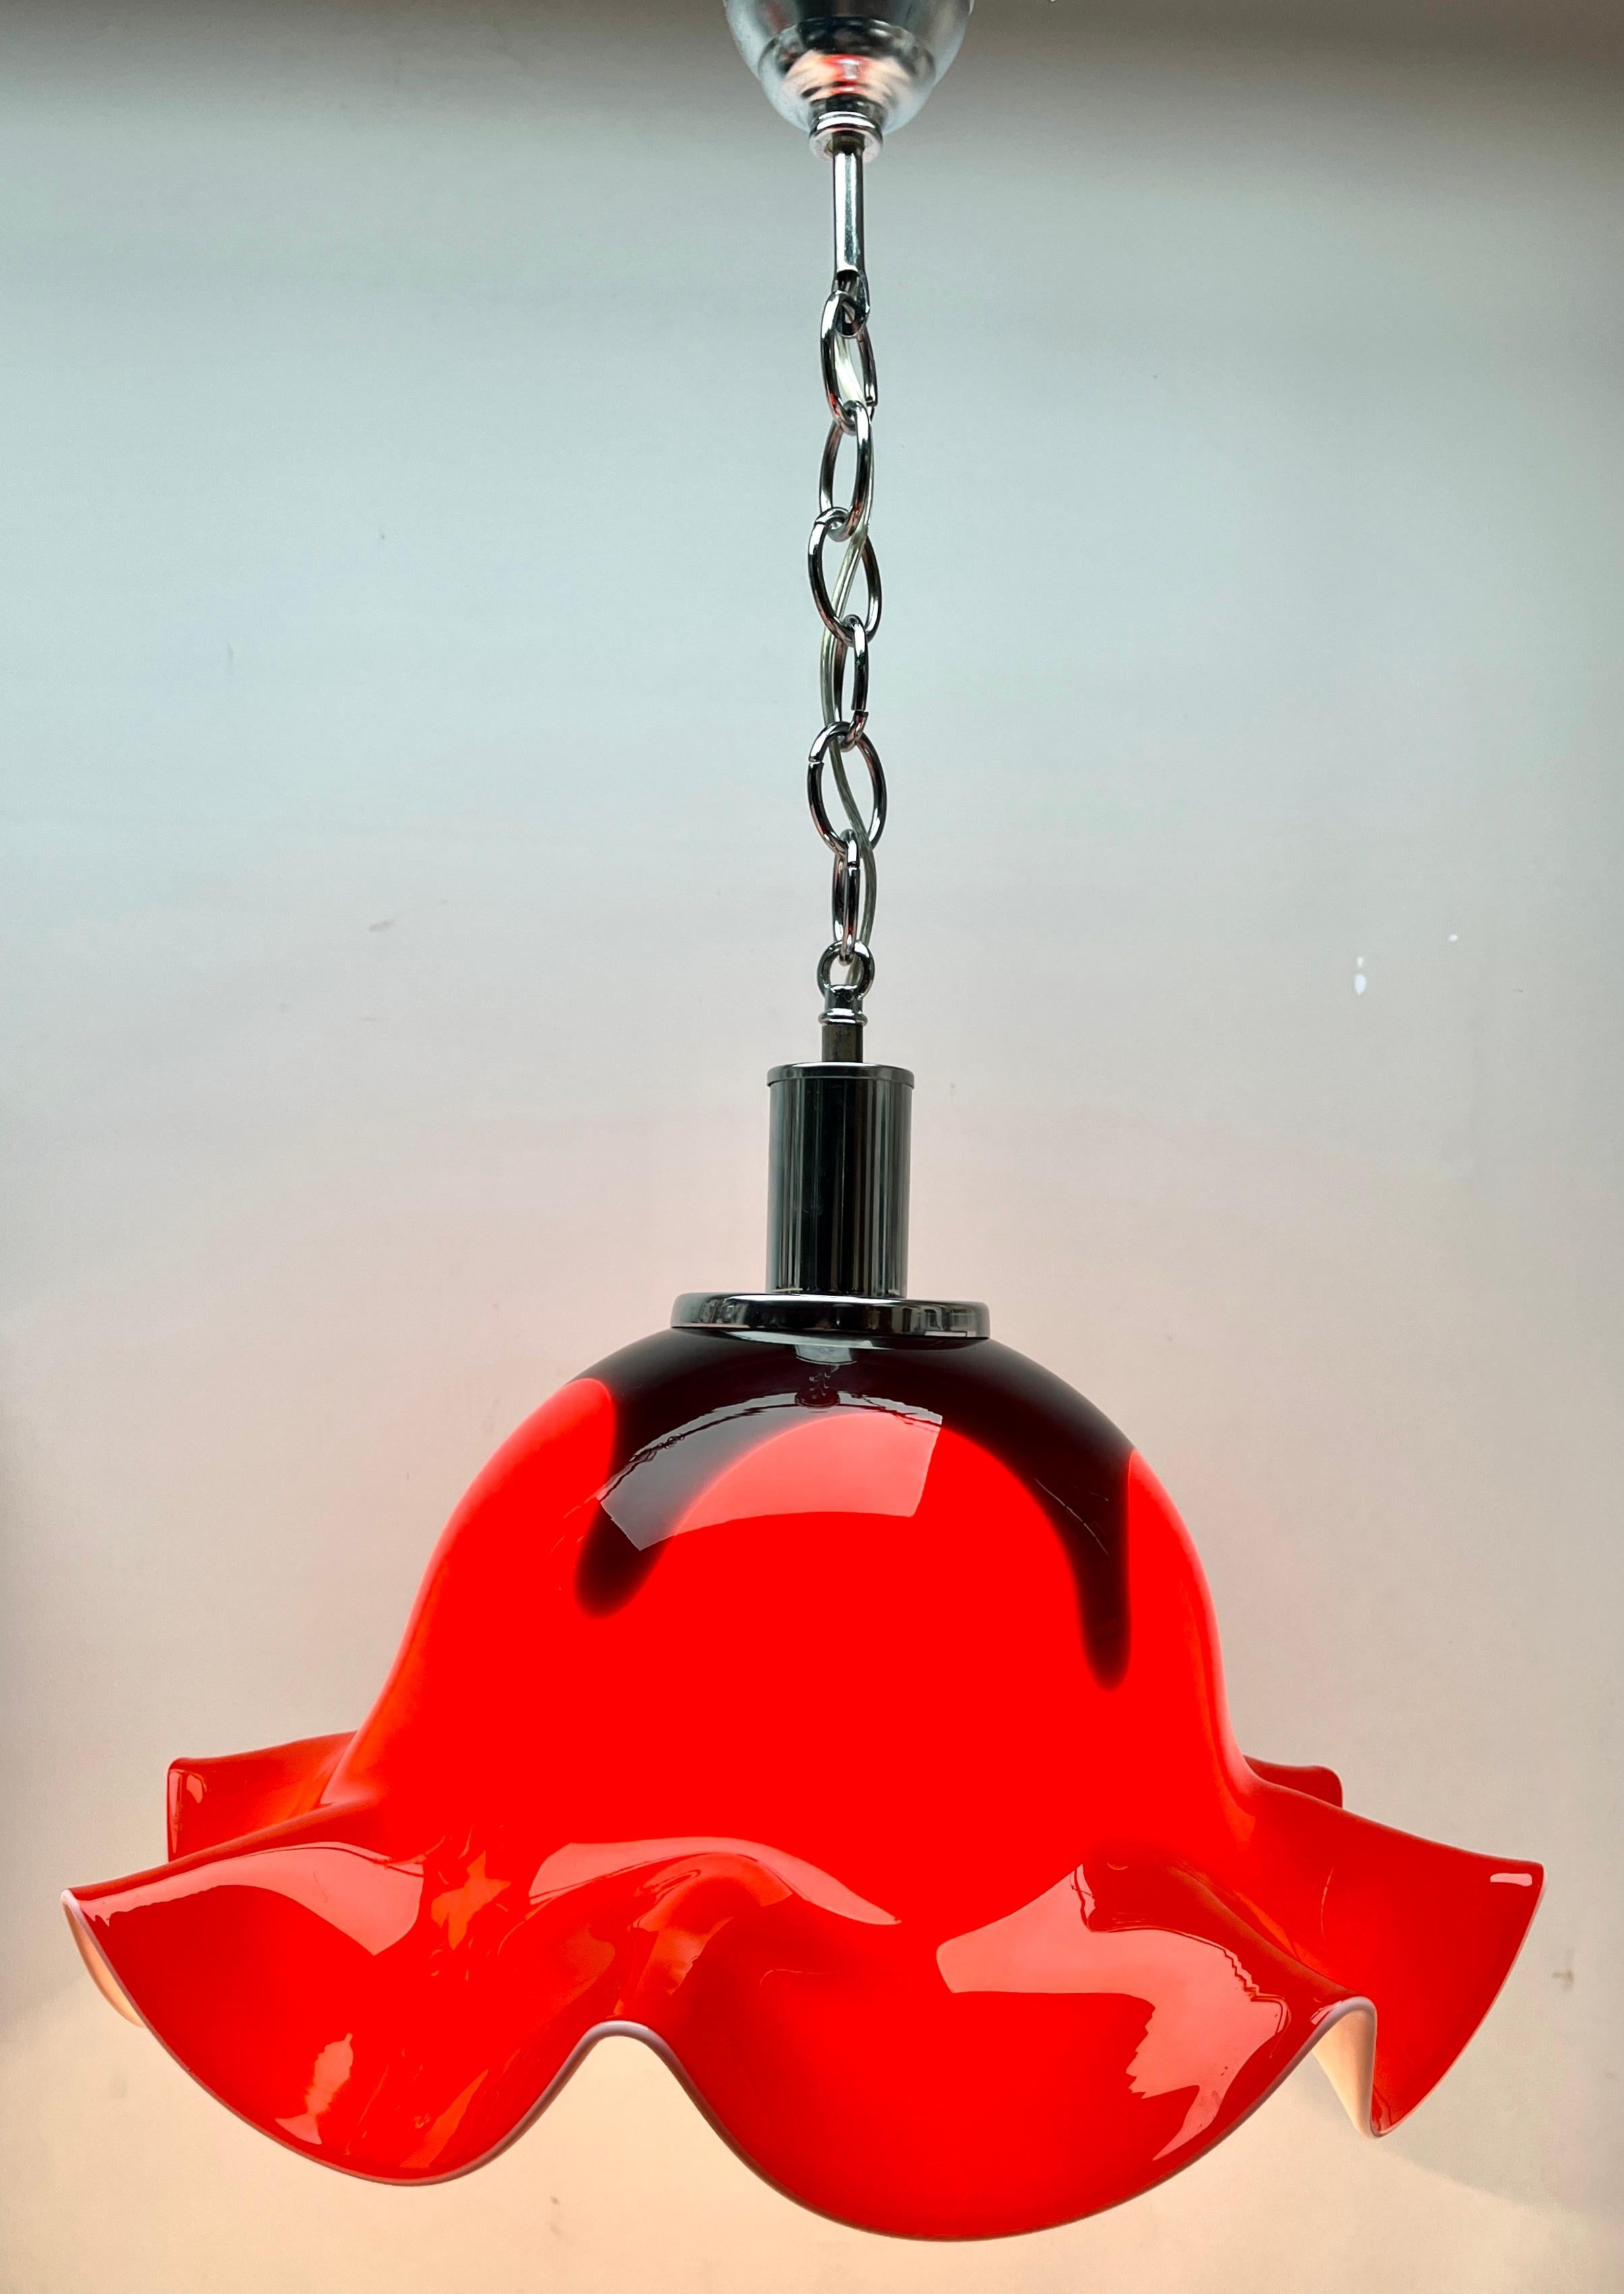 Suspension vintage Murano. Cette lampe suspendue centrale est fabriquée à partir de verre lourd soufflé à la main avec des nuages tourbillonnants dramatiques de rouge et de noir créant une sensation de chaleur. 

La photographie ne parvient pas à